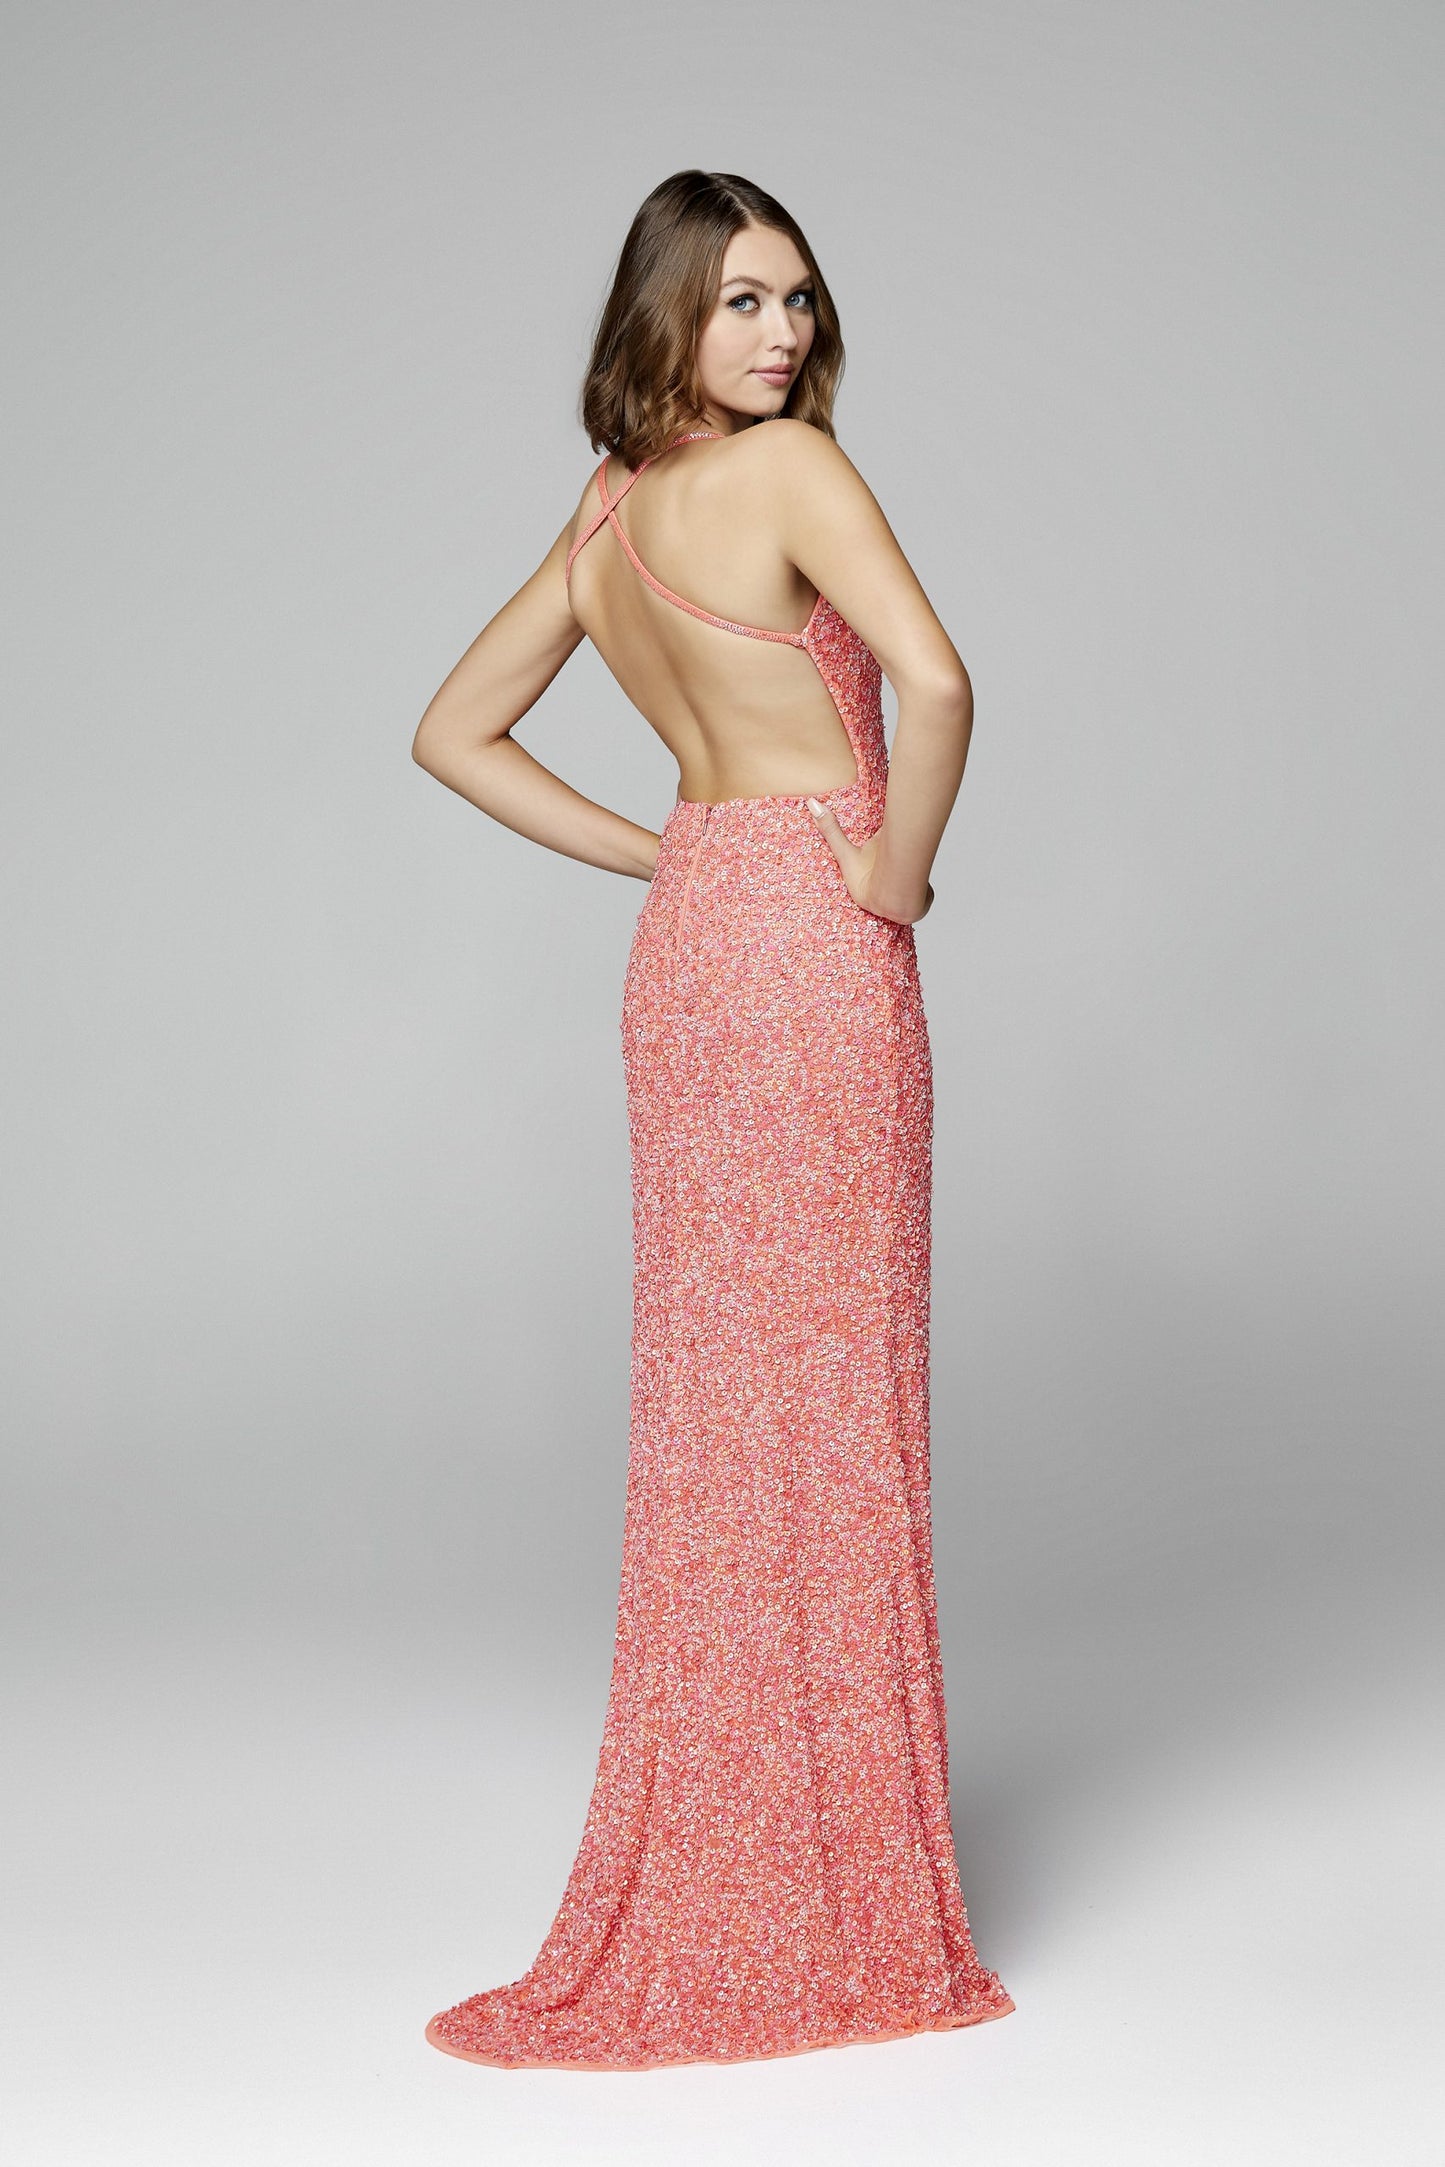 Primavera Couture 3291 Coral Prom Dress V Neckline Backless Sequins Slit sizes 2, 6